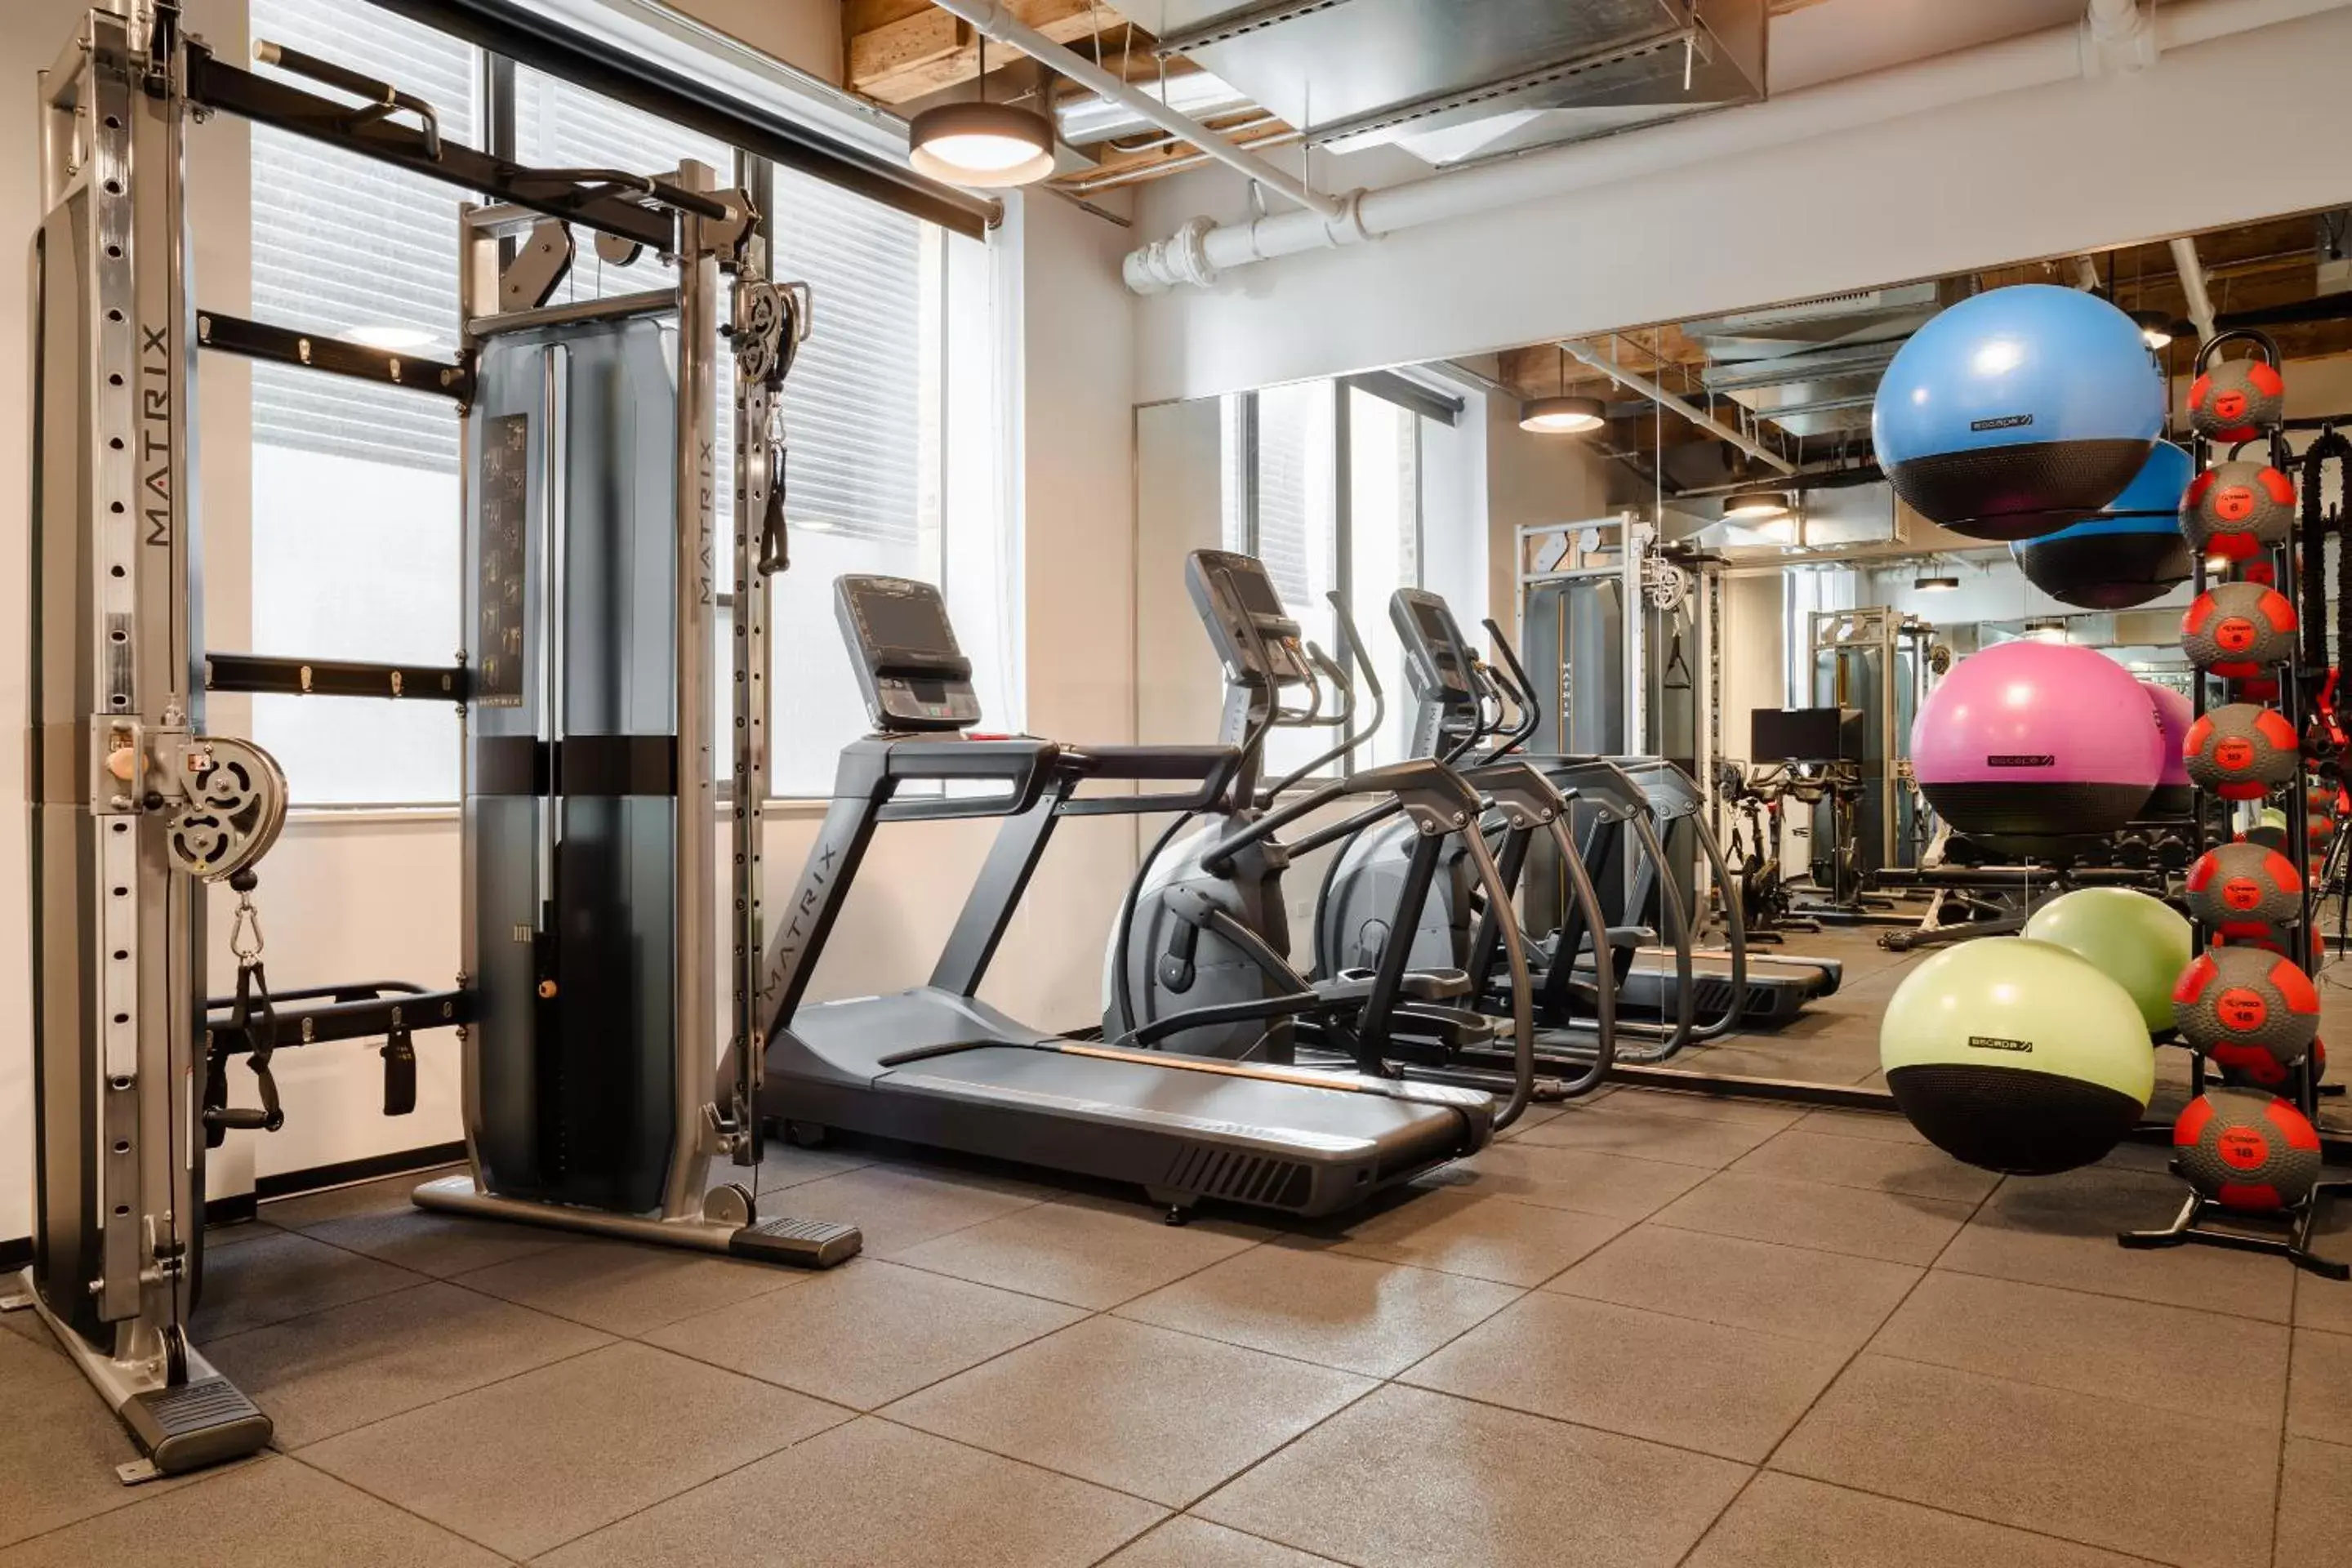 Fitness centre/facilities, Fitness Center/Facilities in Sonder Market Hall